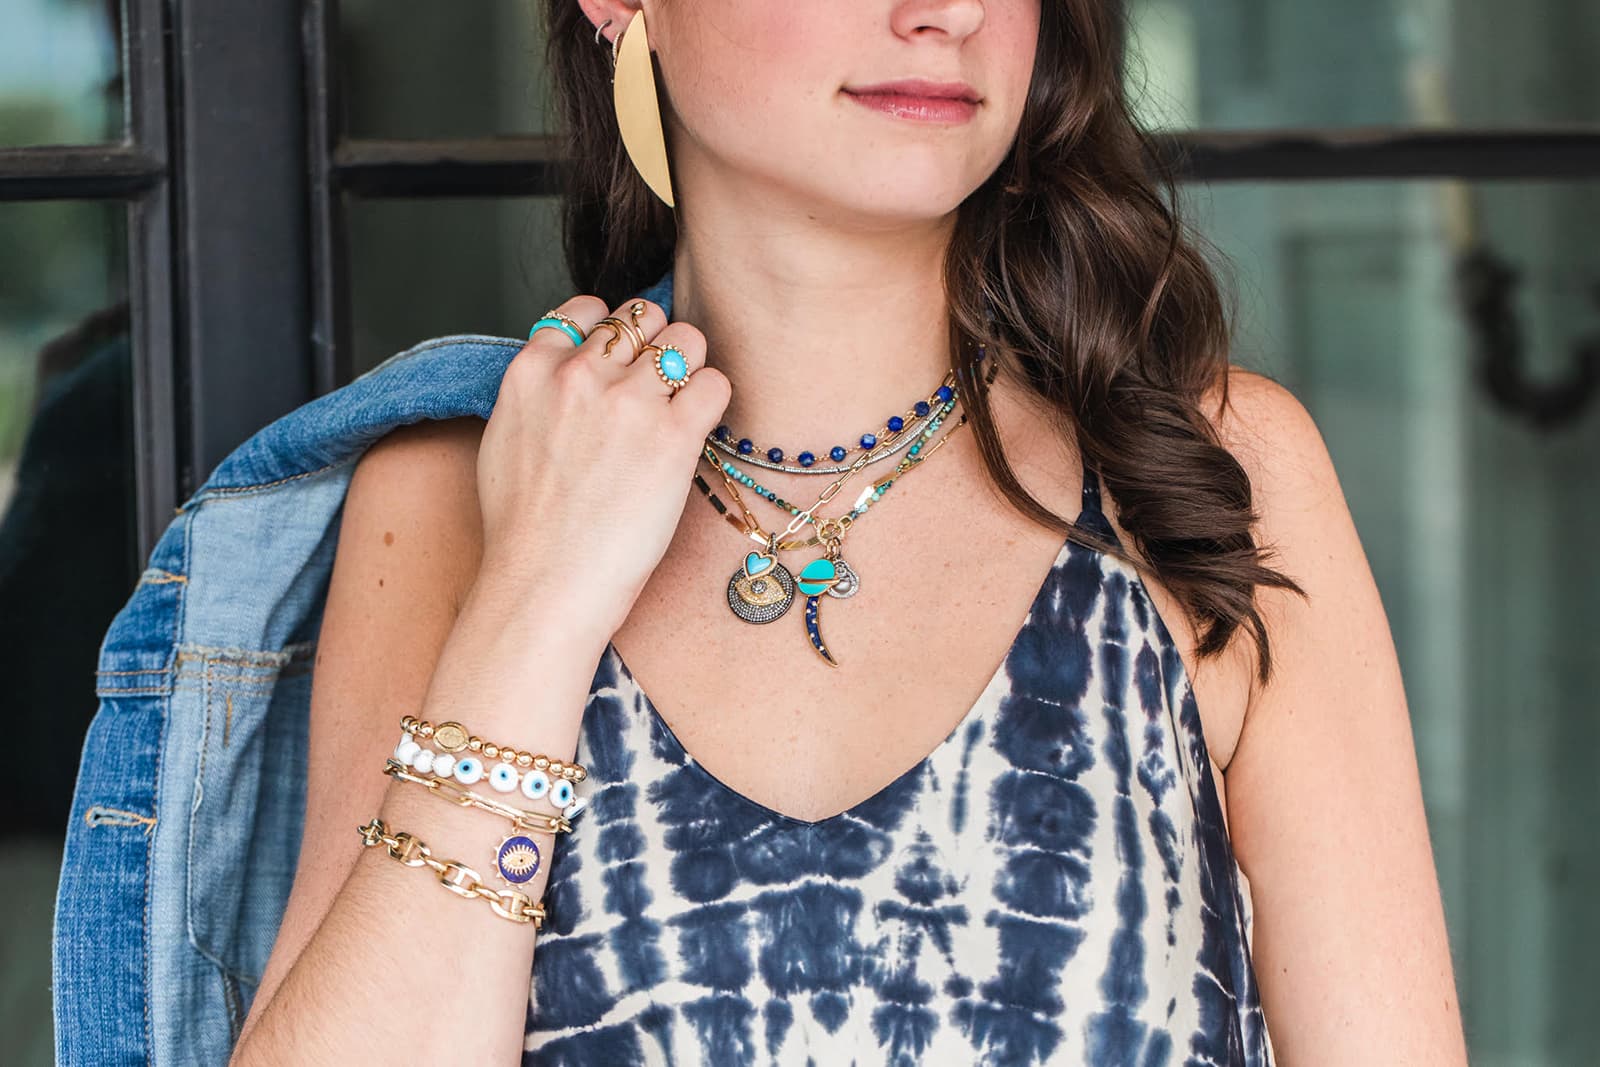 J. Landa Jewelry в Хьюстоне, штат Техас, специализируется на украшениях в стиле «шейный беспорядок»